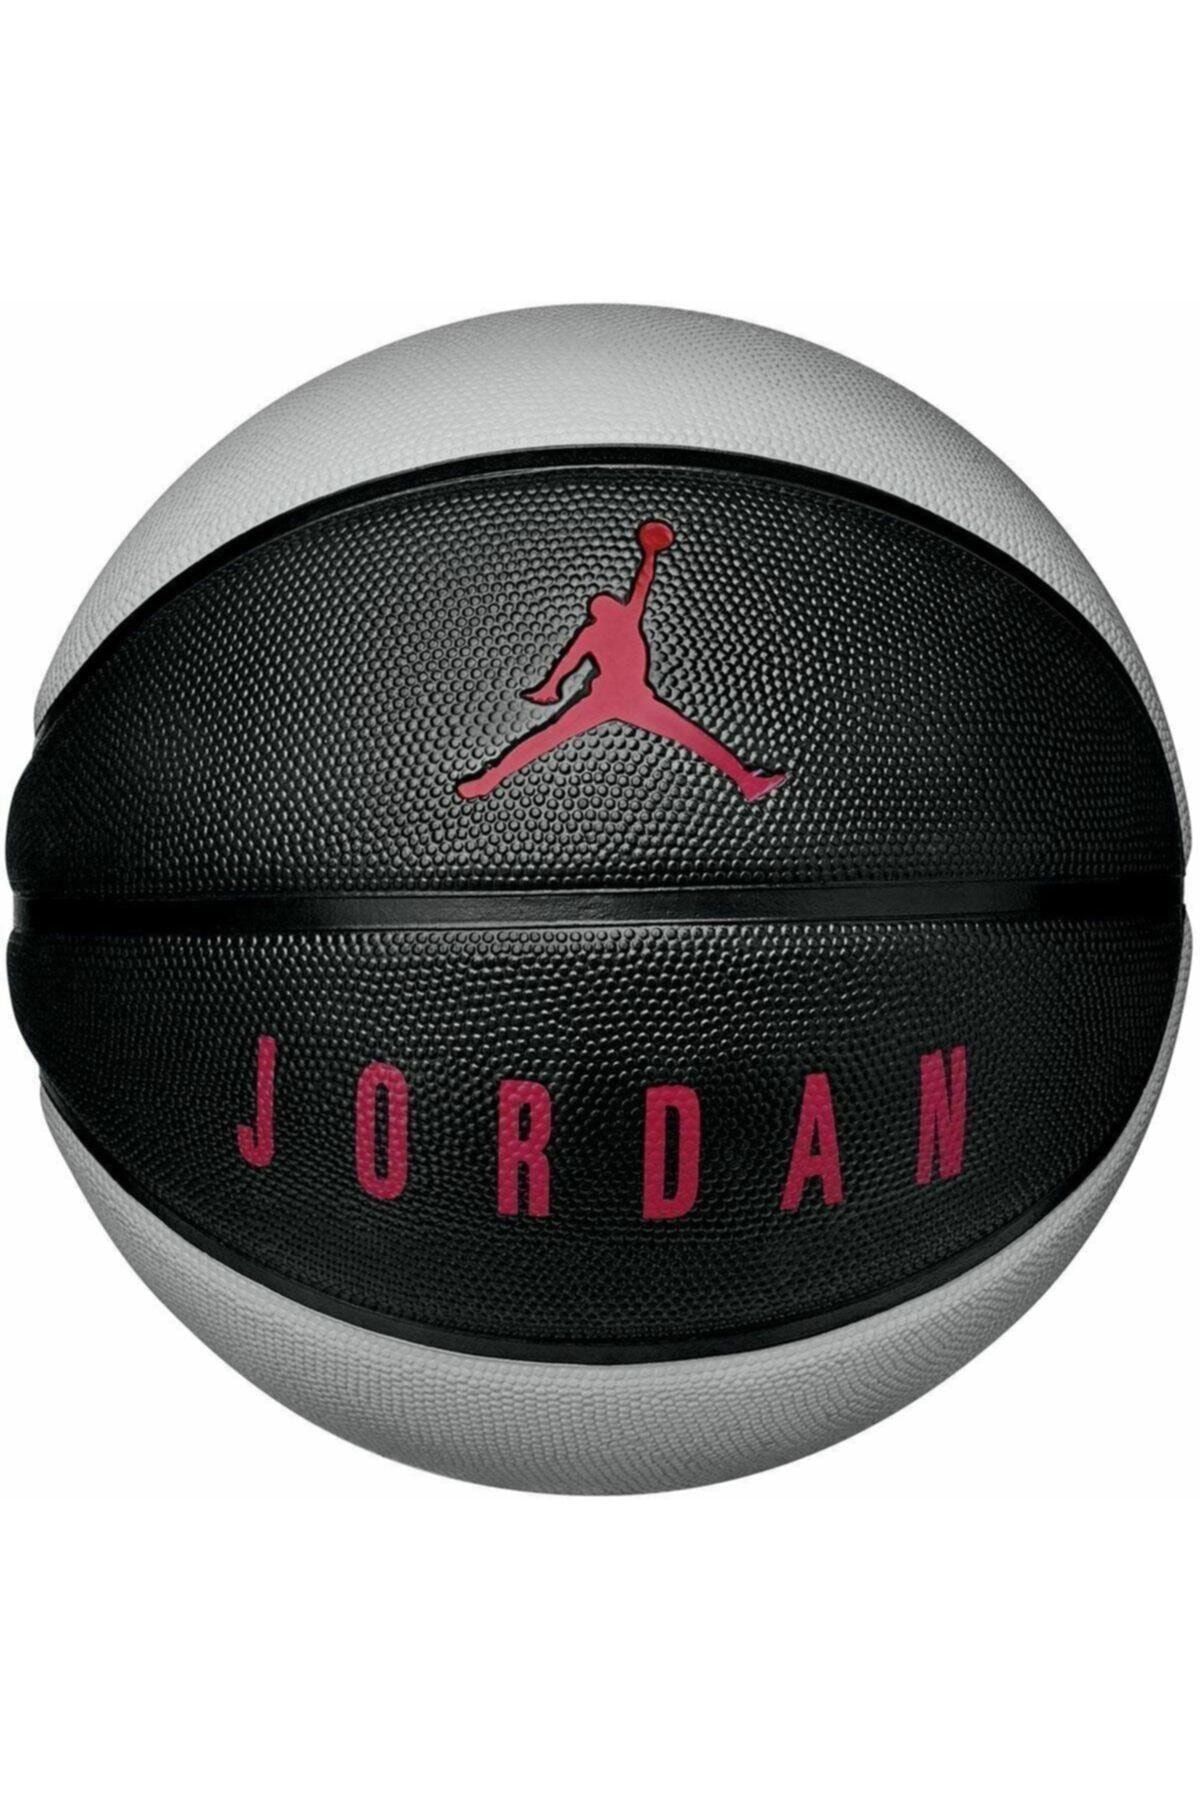 Nike Jordan Playground 8p Basketbol Topu